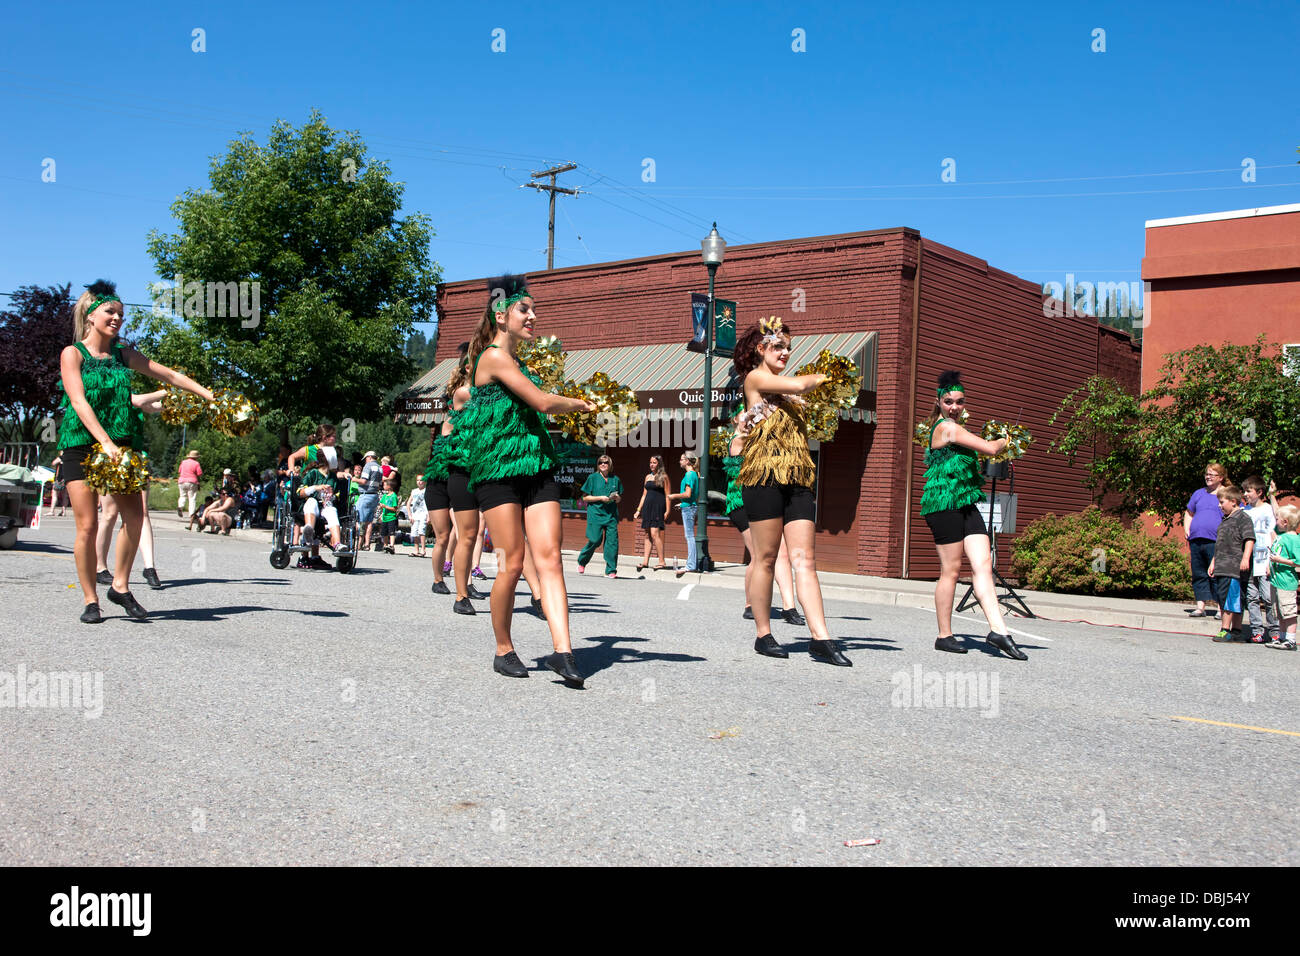 Dances in a parade. Stock Photo